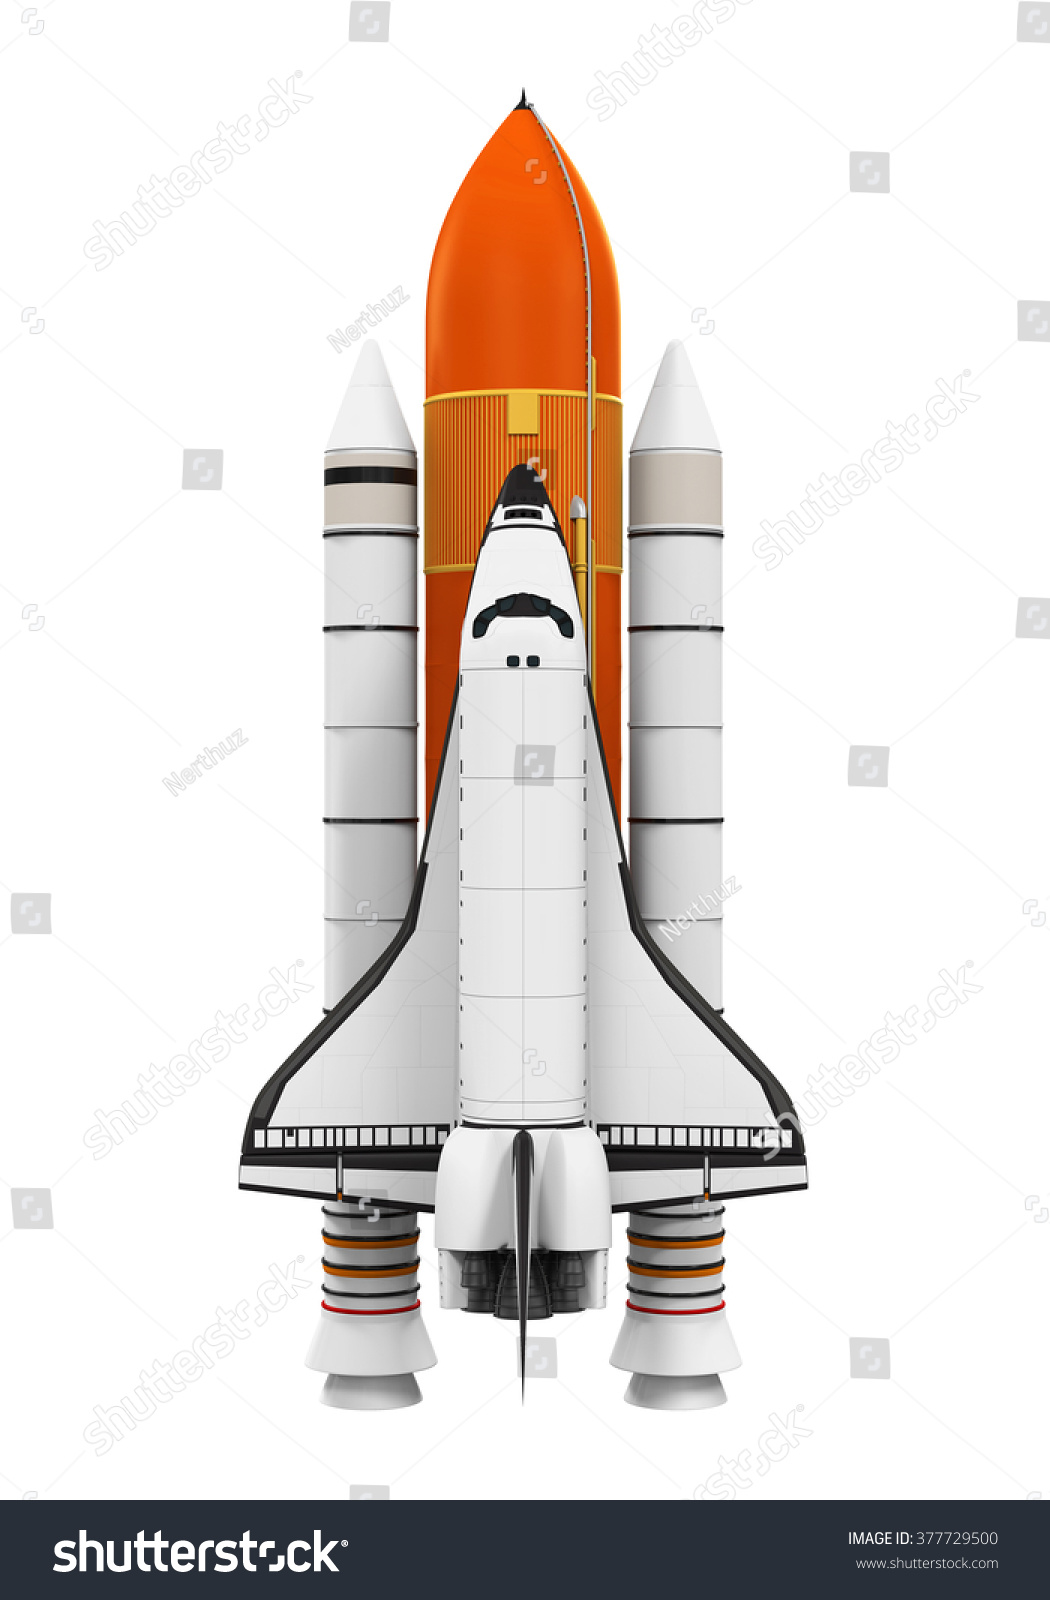 スペースシャトル のイラスト素材